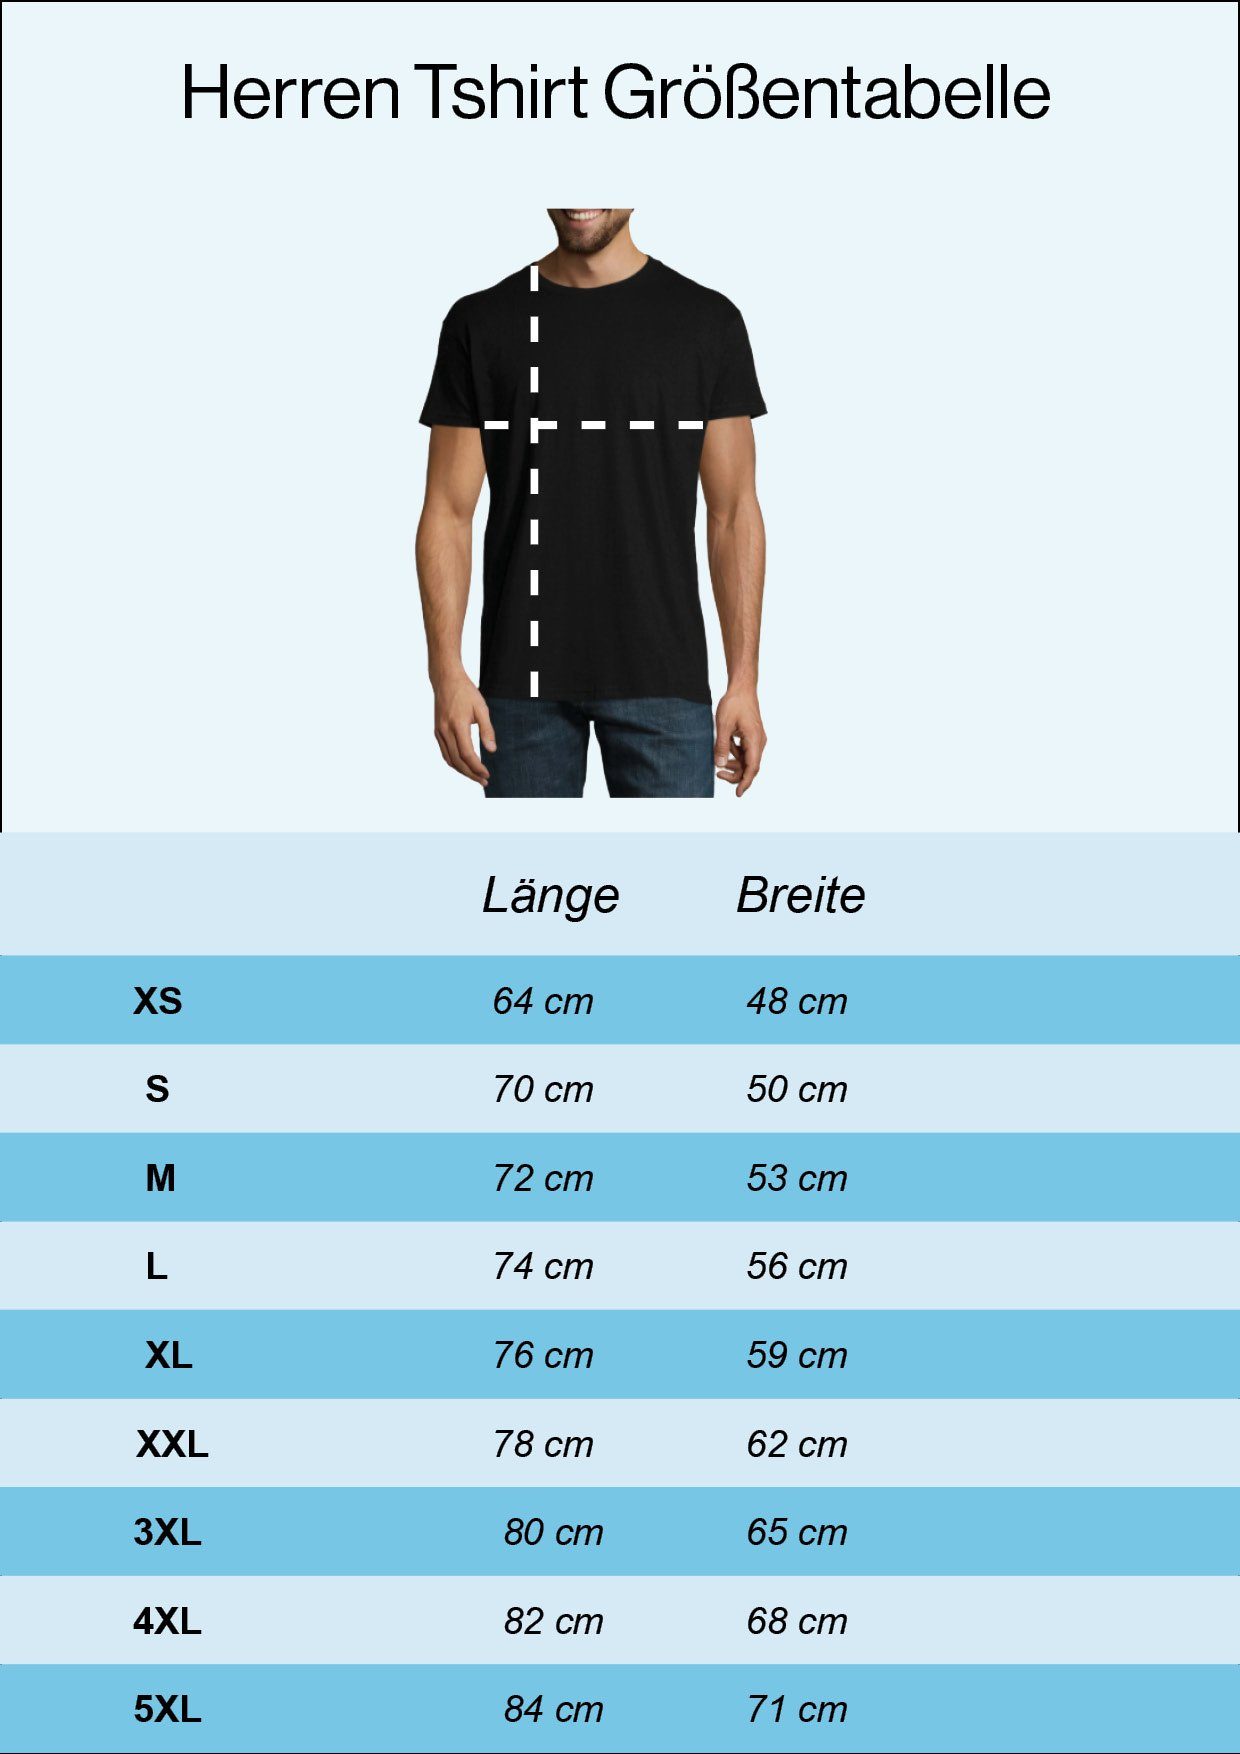 Mario T-Shirt Navyblau Frontprint trendigem Mit T-Shirt Youth Designz Herren